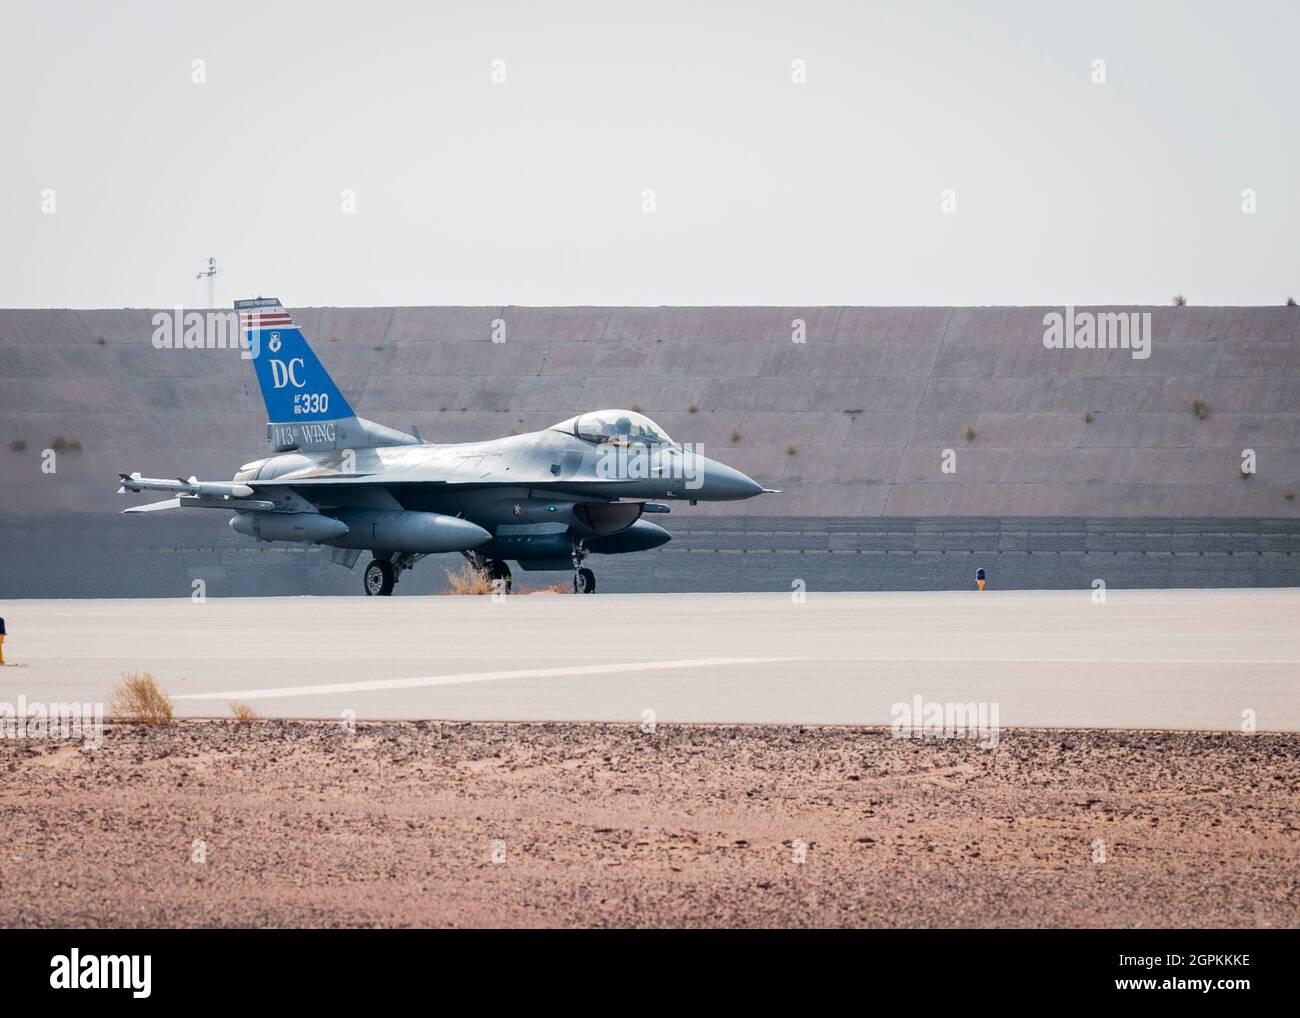 Un faucon de combat F-16 de la Force aérienne des États-Unis affecté au 121e Escadron de chasseurs expéditionnaires se rendant sur la piste de la base aérienne de Prince Sultan, Royaume d'Arabie saoudite, avant de prendre l'avion pour la base aérienne d'Al Udeid, au Qatar, pour l'exercice Sky Shield III, le 31 juillet 2021. Sky Shield est un exercice bilatéral de contre-vol et de recherche et de sauvetage au combat conçu pour valider la capacité combinée de la Force aérienne centrale des États-Unis et de la Force aérienne du Qatar Emiri de défendre l'espace aérien régional. L'événement a permis à la 378e Escadre expéditionnaire aérienne de démontrer ses capacités agiles d'emploi de combat de repositionnement des forces dans divers Banque D'Images